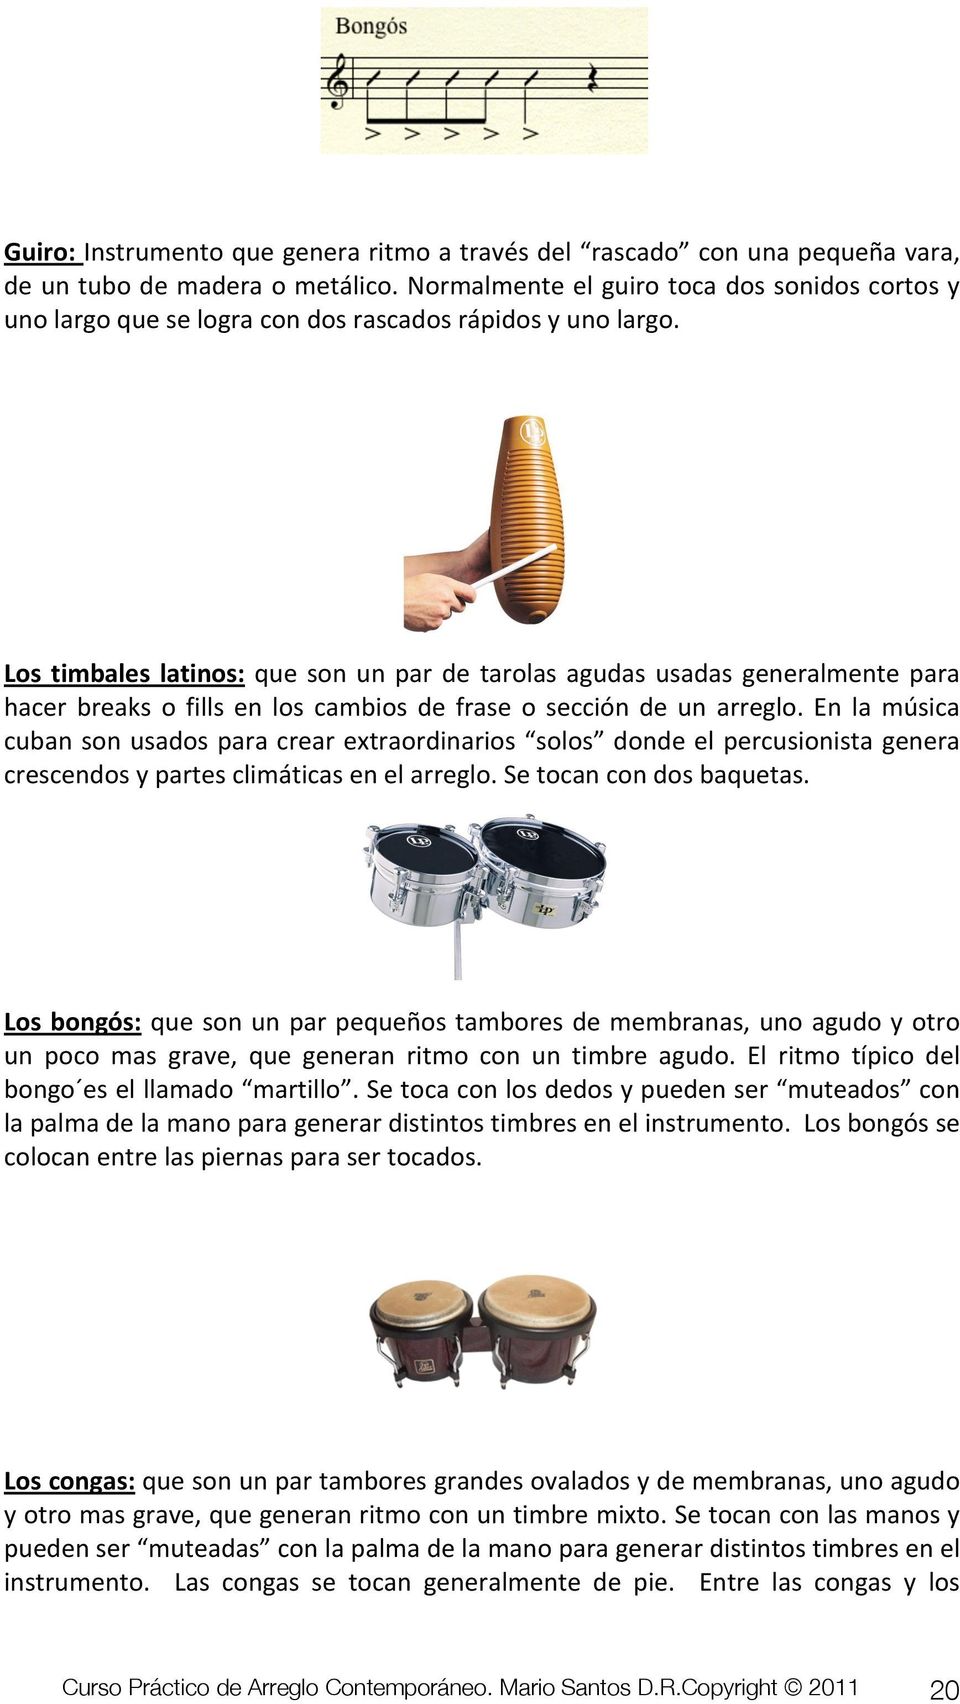 Los timbales latinos: que son un par de tarolas agudas usadas generalmente para hacer breaks o fills en los cambios de frase o sección de un arreglo.